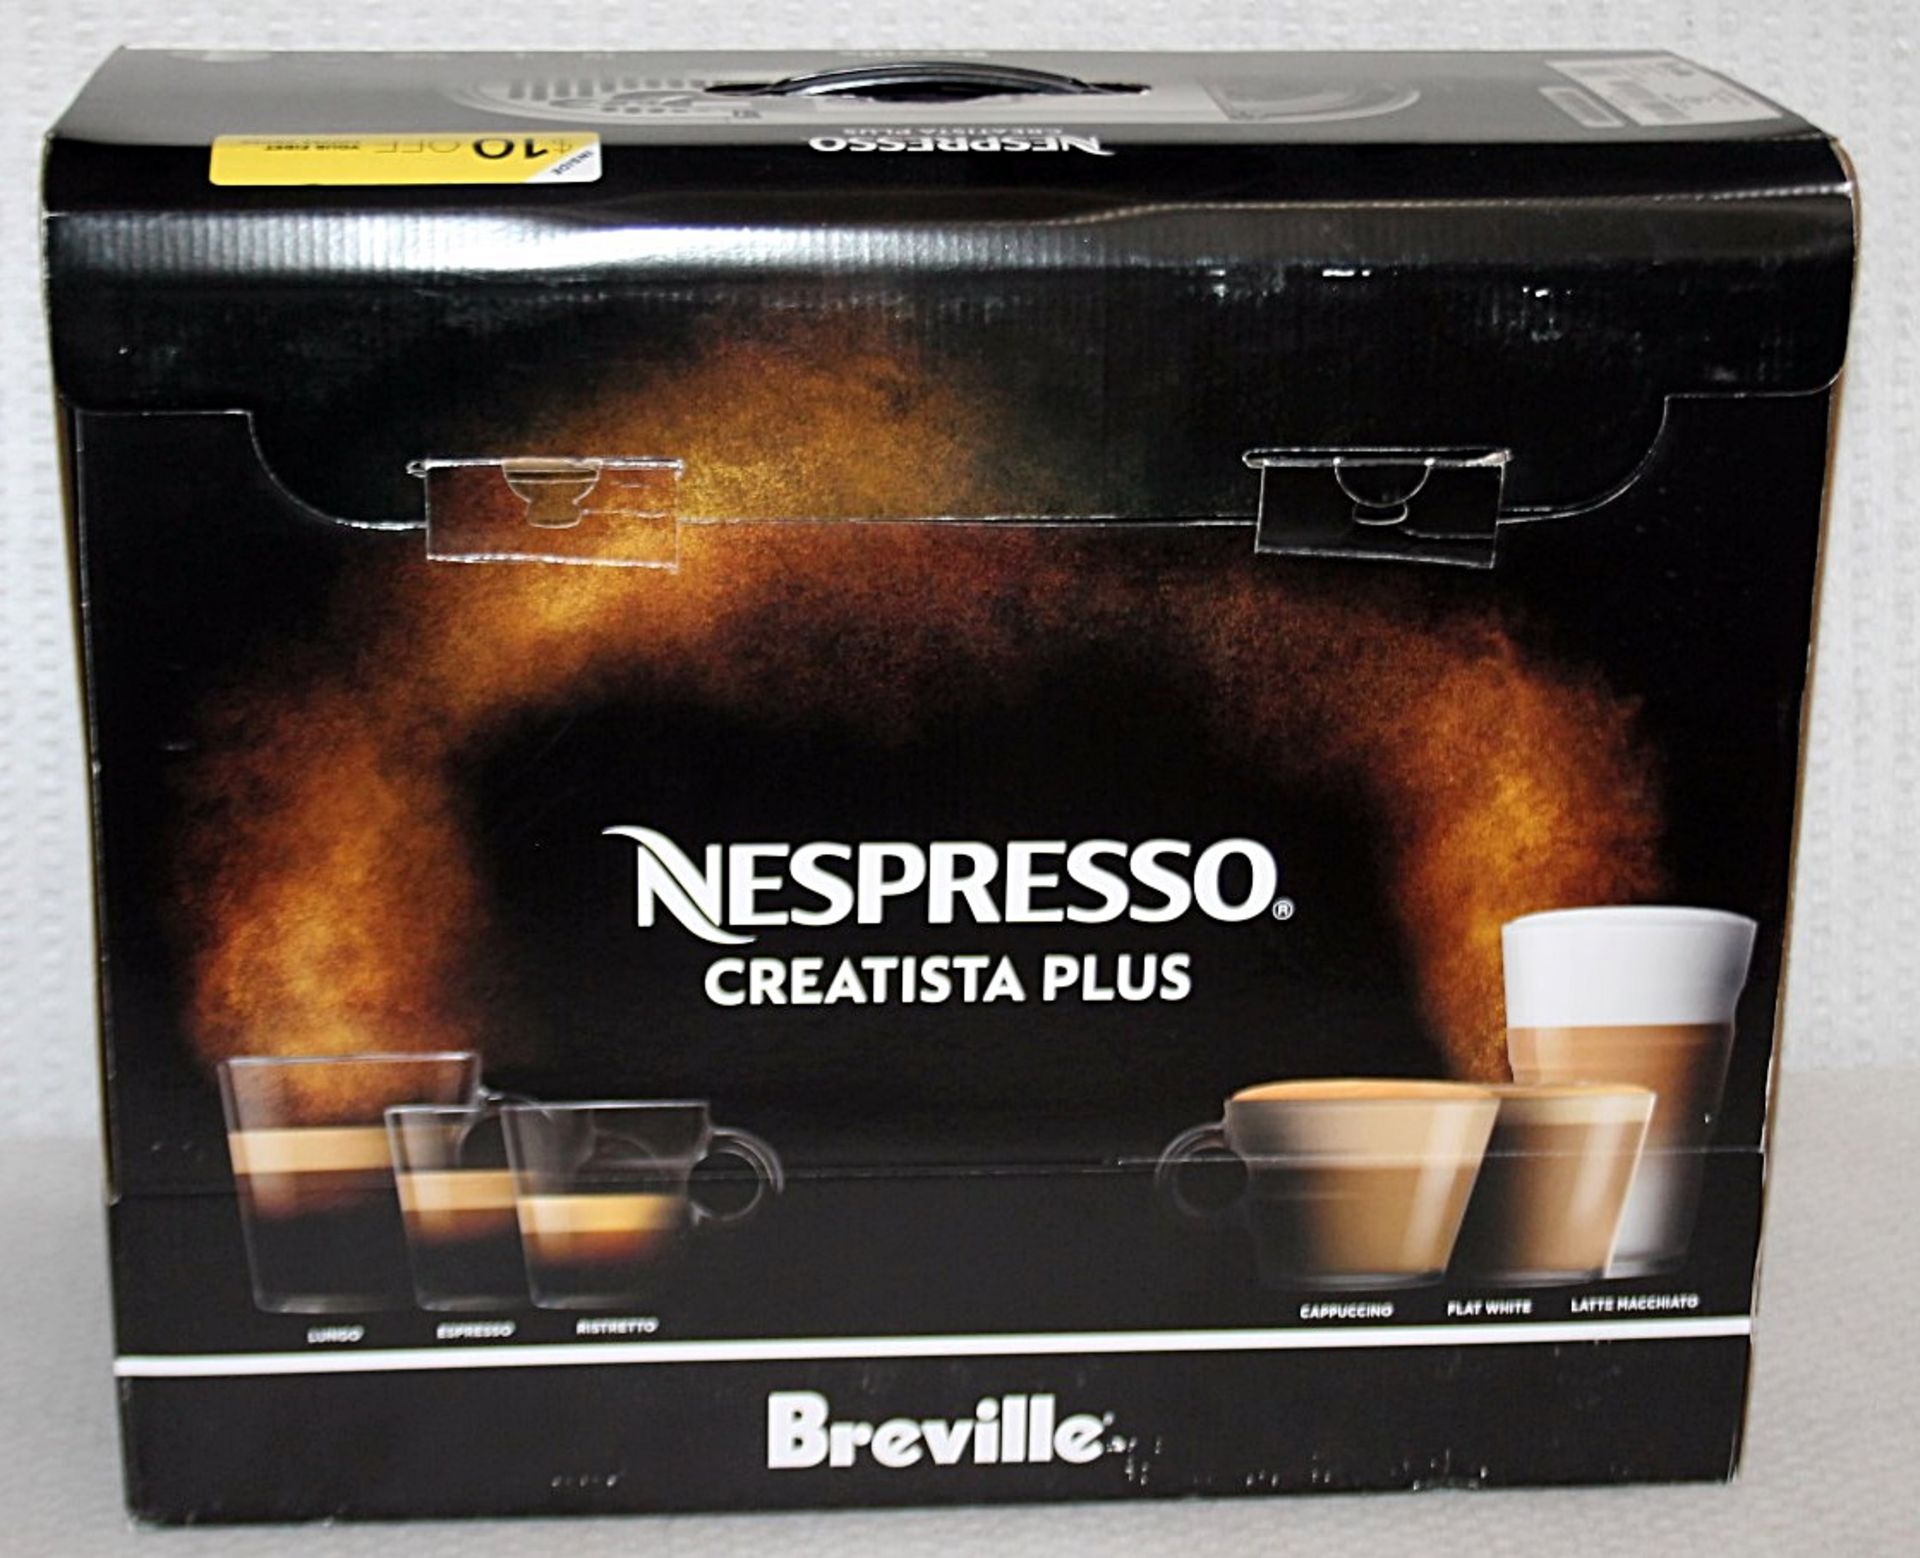 1 x NESPRESSO 'Creatista Plus' Coffee Machine In Silver - Original Price £479.95 - Boxed Stock - Image 8 of 18